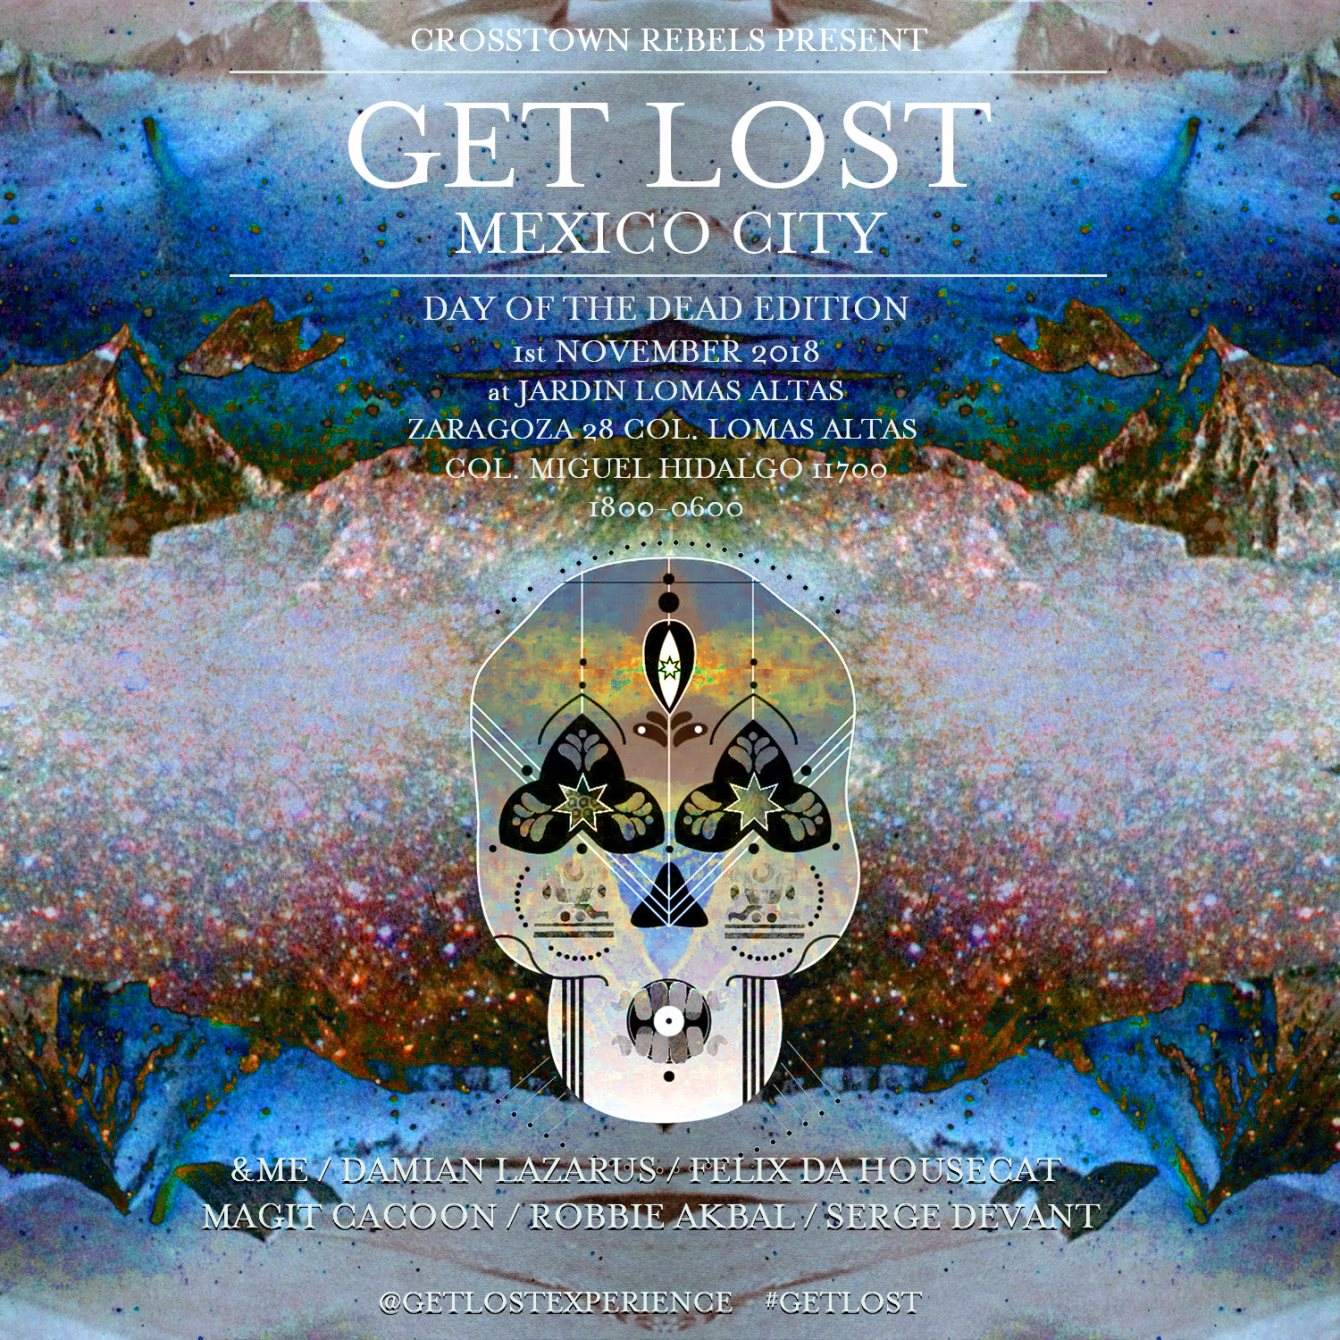 Get Lost Mexico City 2018 - フライヤー表